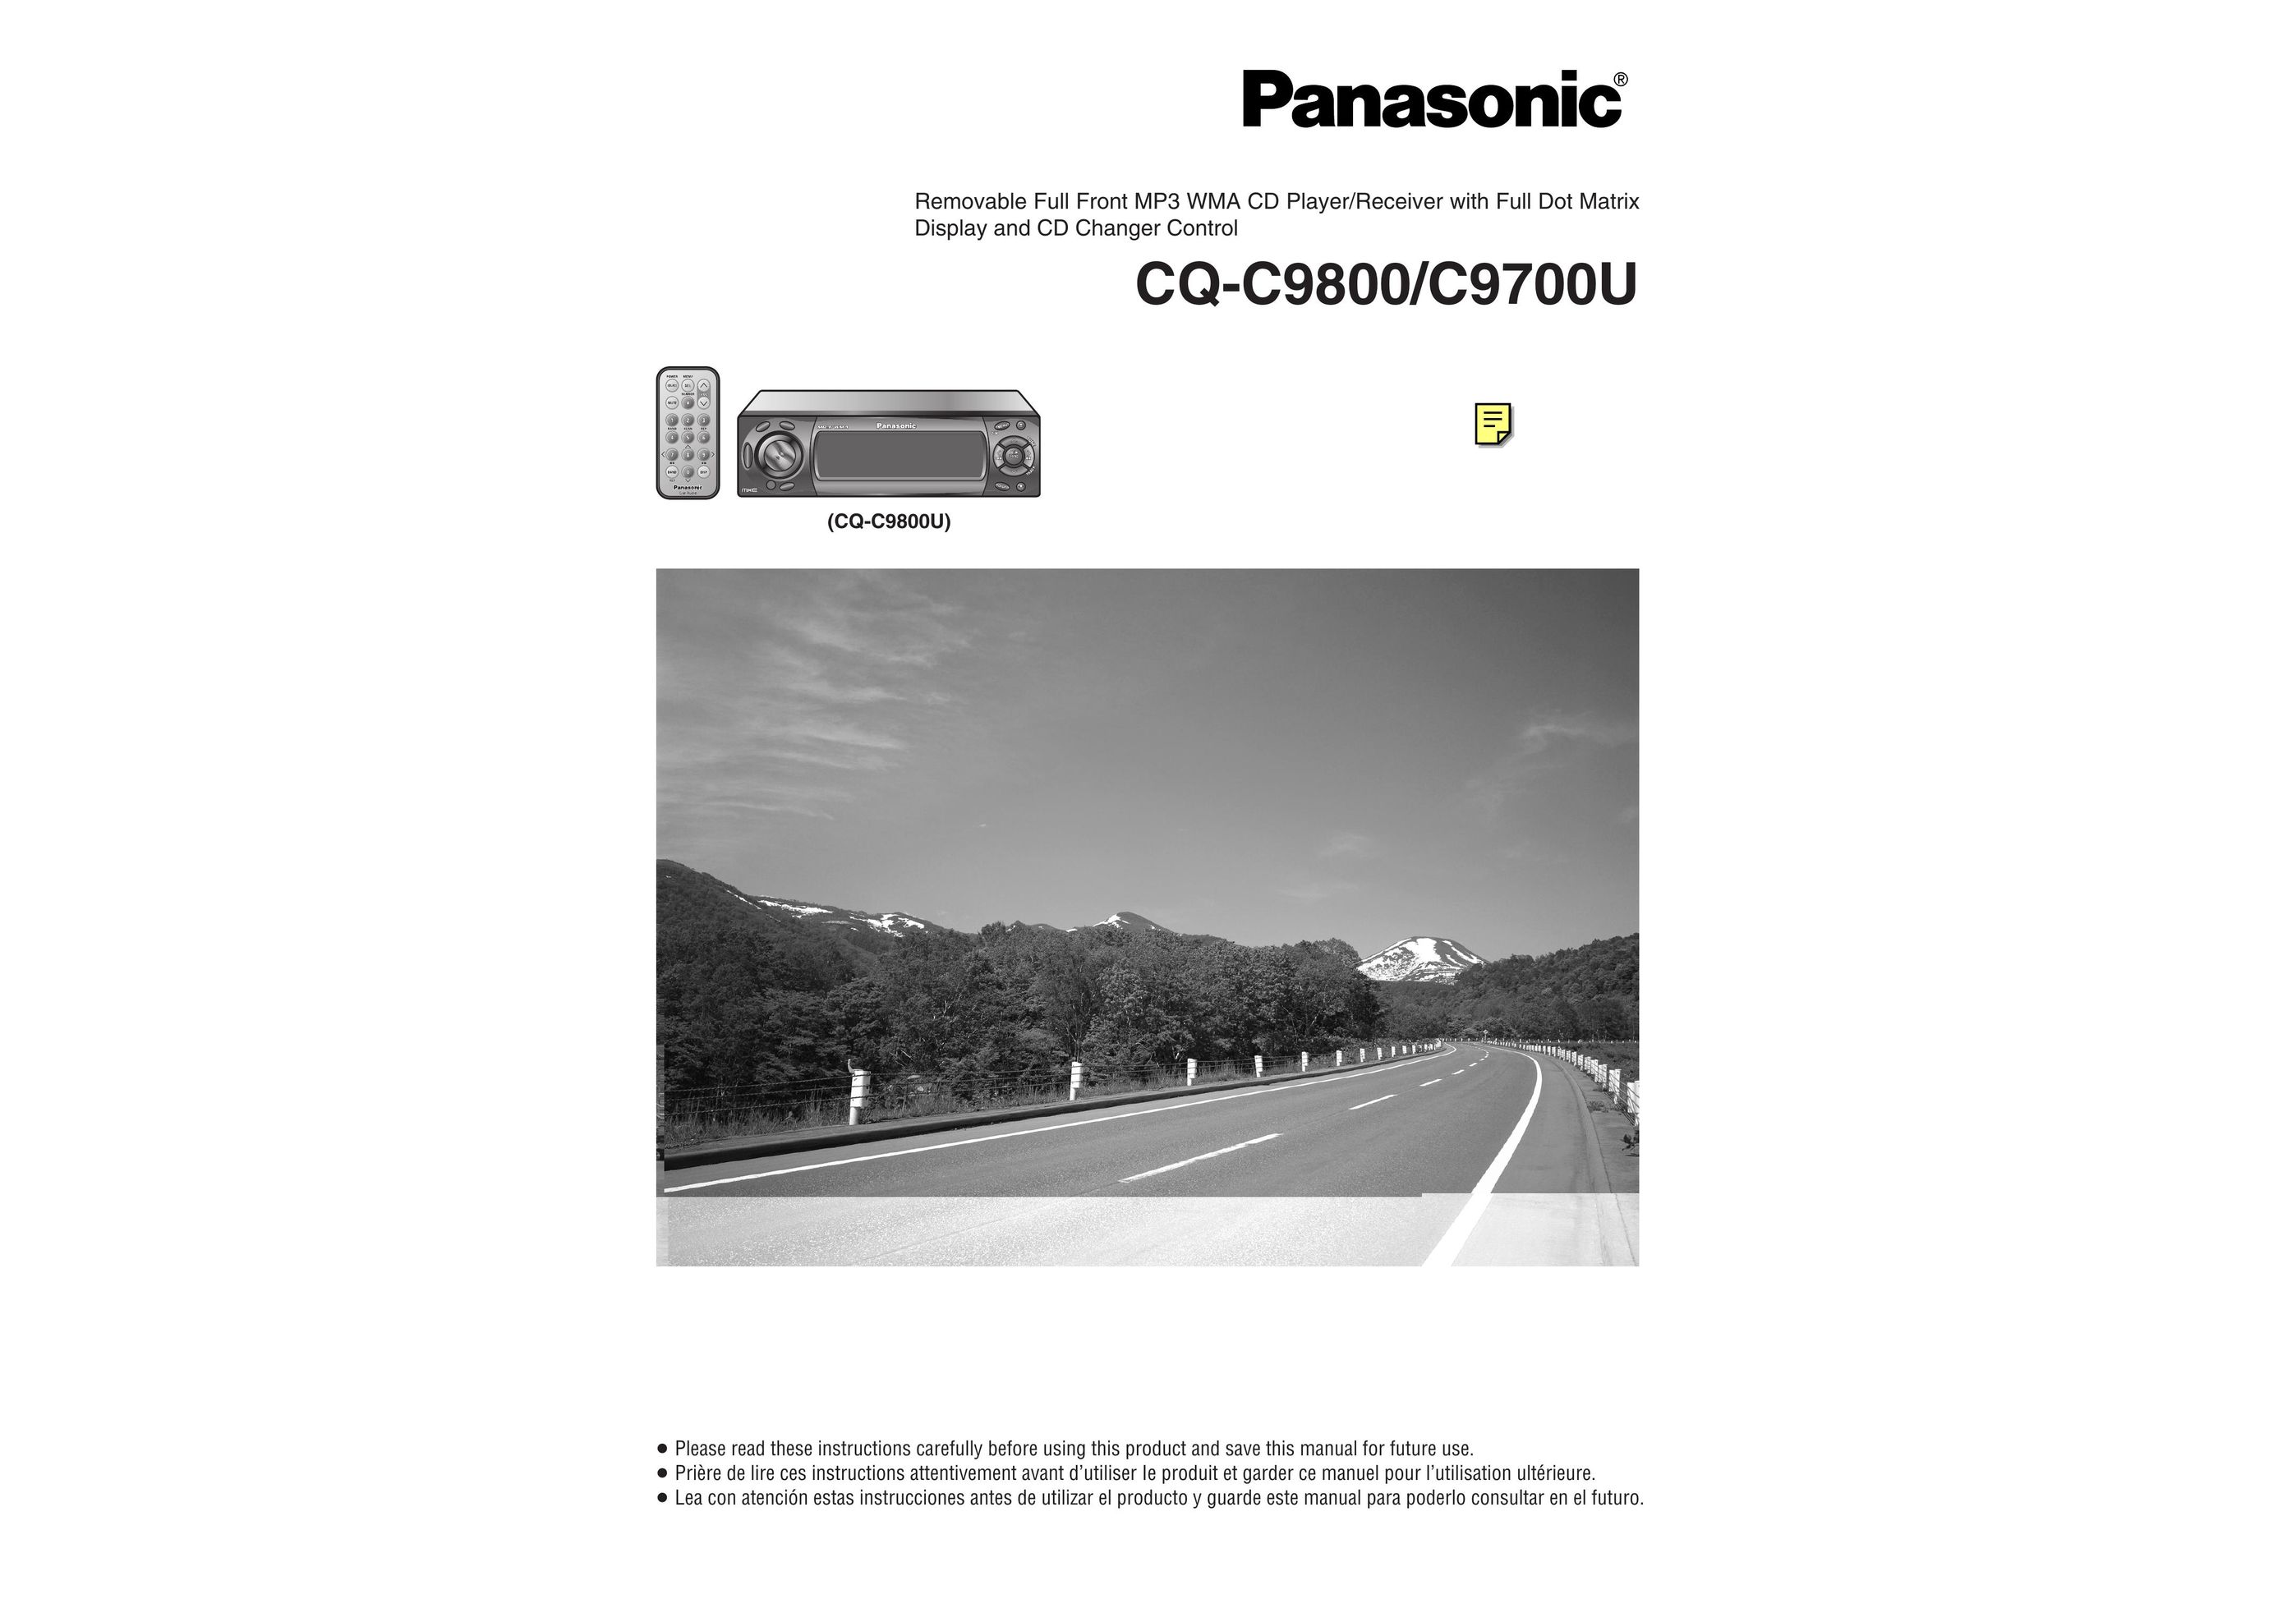 Panasonic C9700U CD Player User Manual